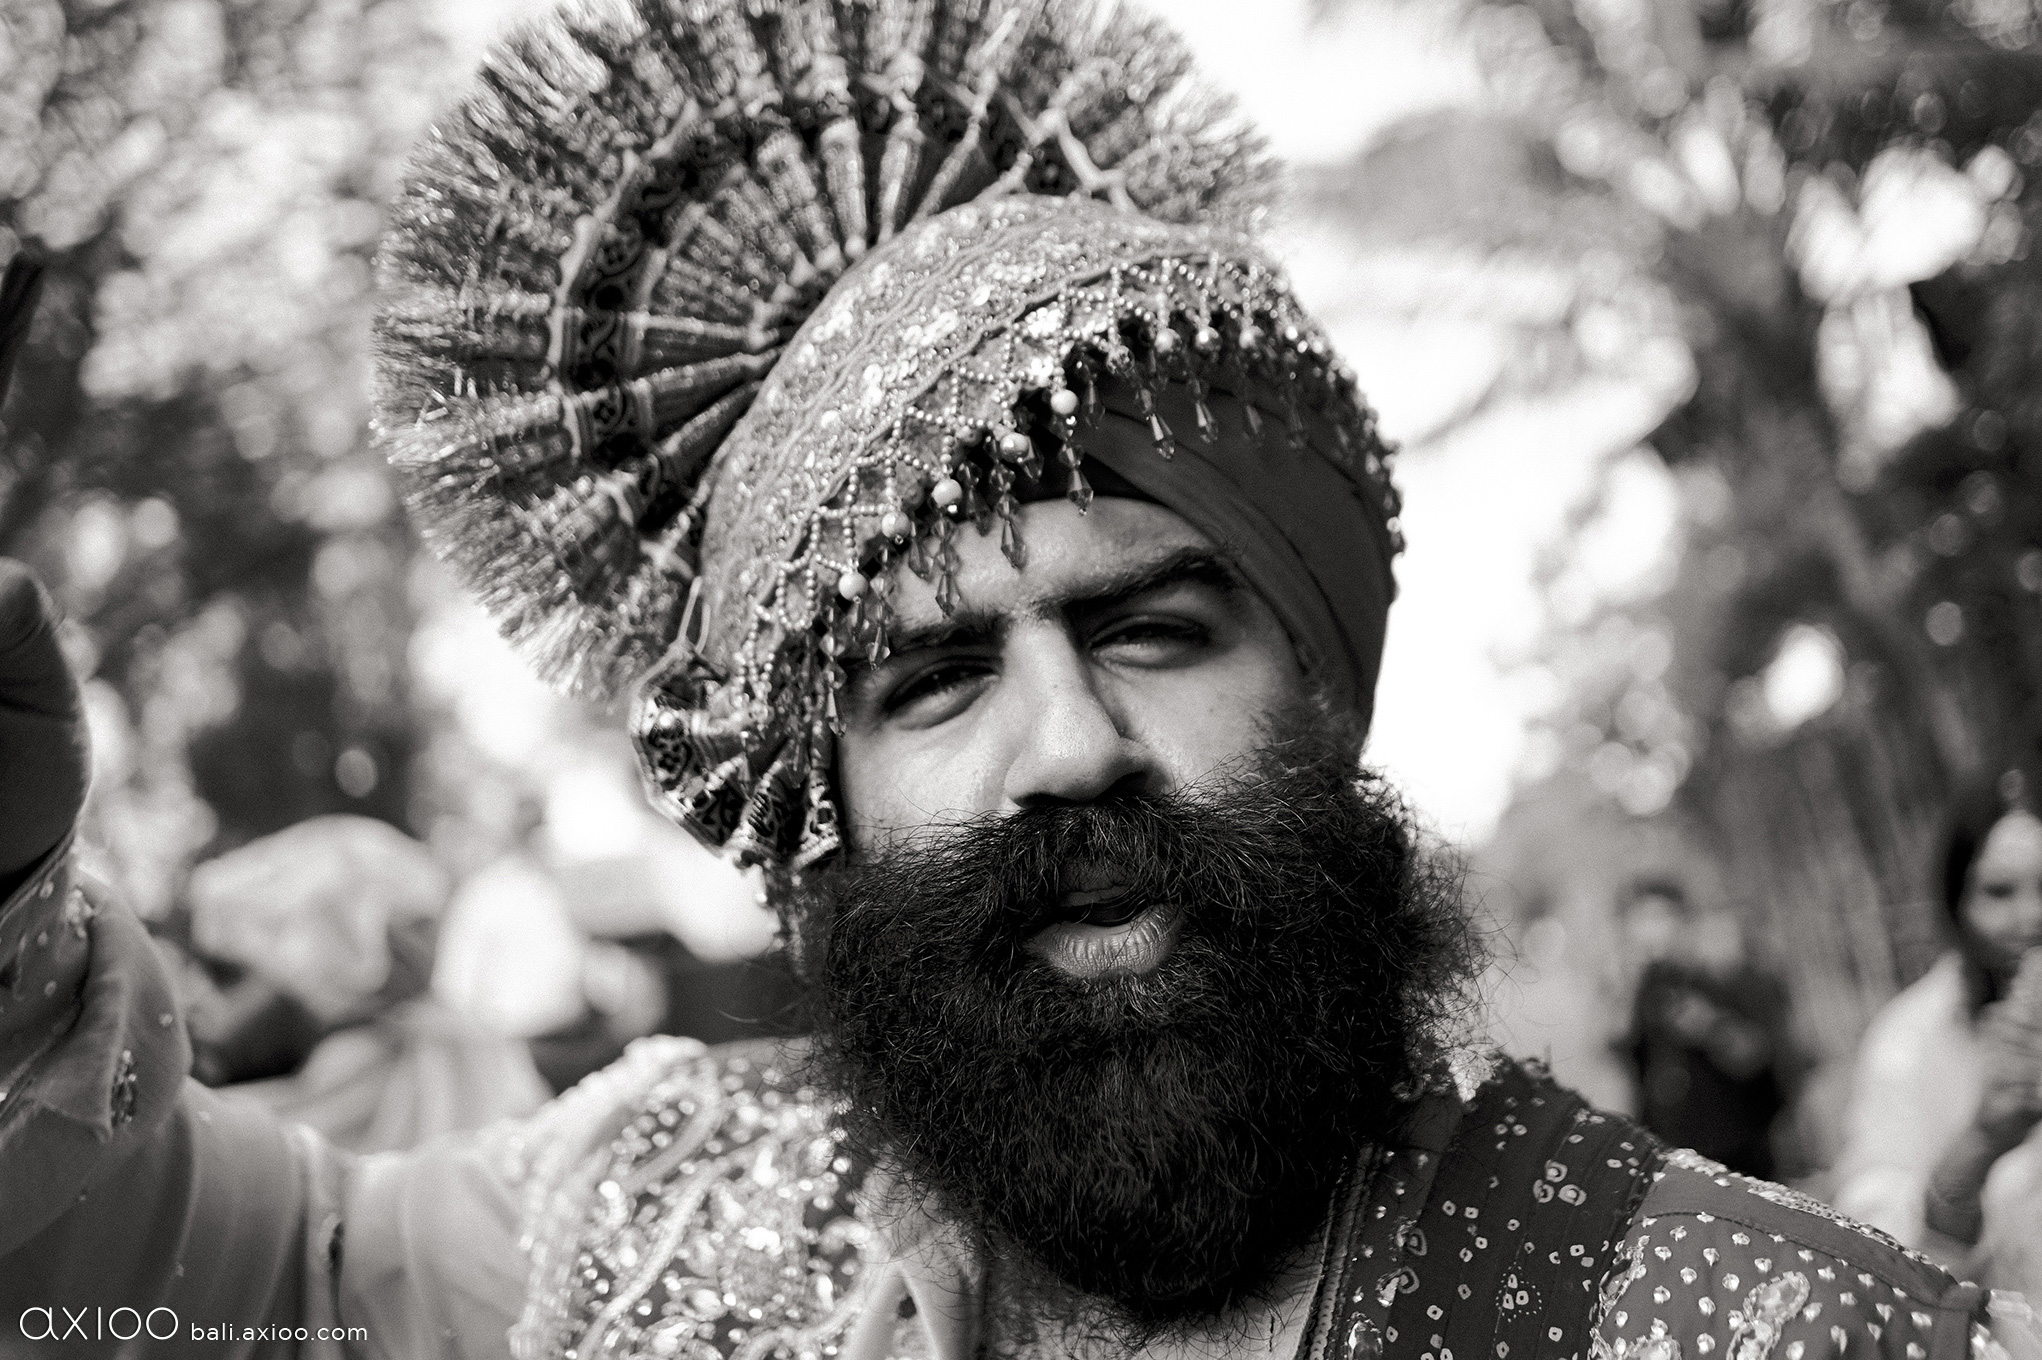 Axioo: Kaleidoscope of Love: Indian Weddings